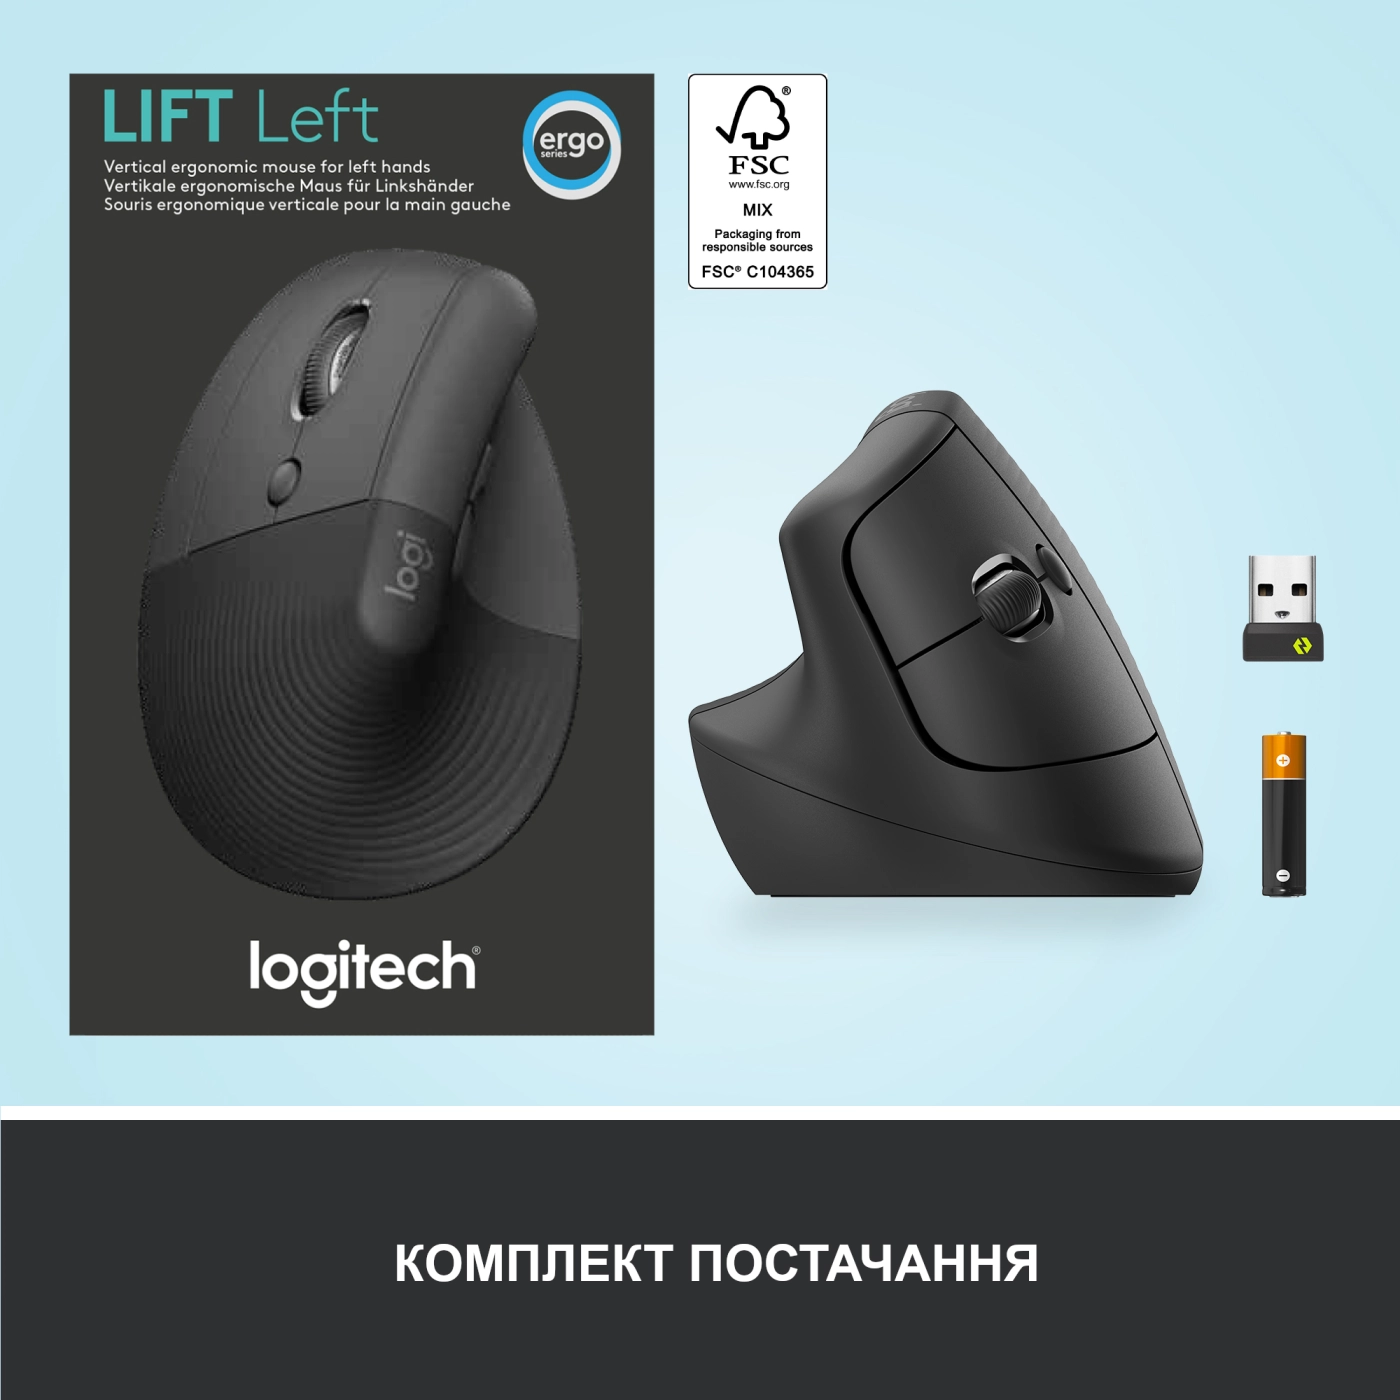 Купить Мышь Logitech Lift Left Vertical Ergonomic Mouse graphite-black 2.4GHZ/BT LEFT (910-006474) - фото 7